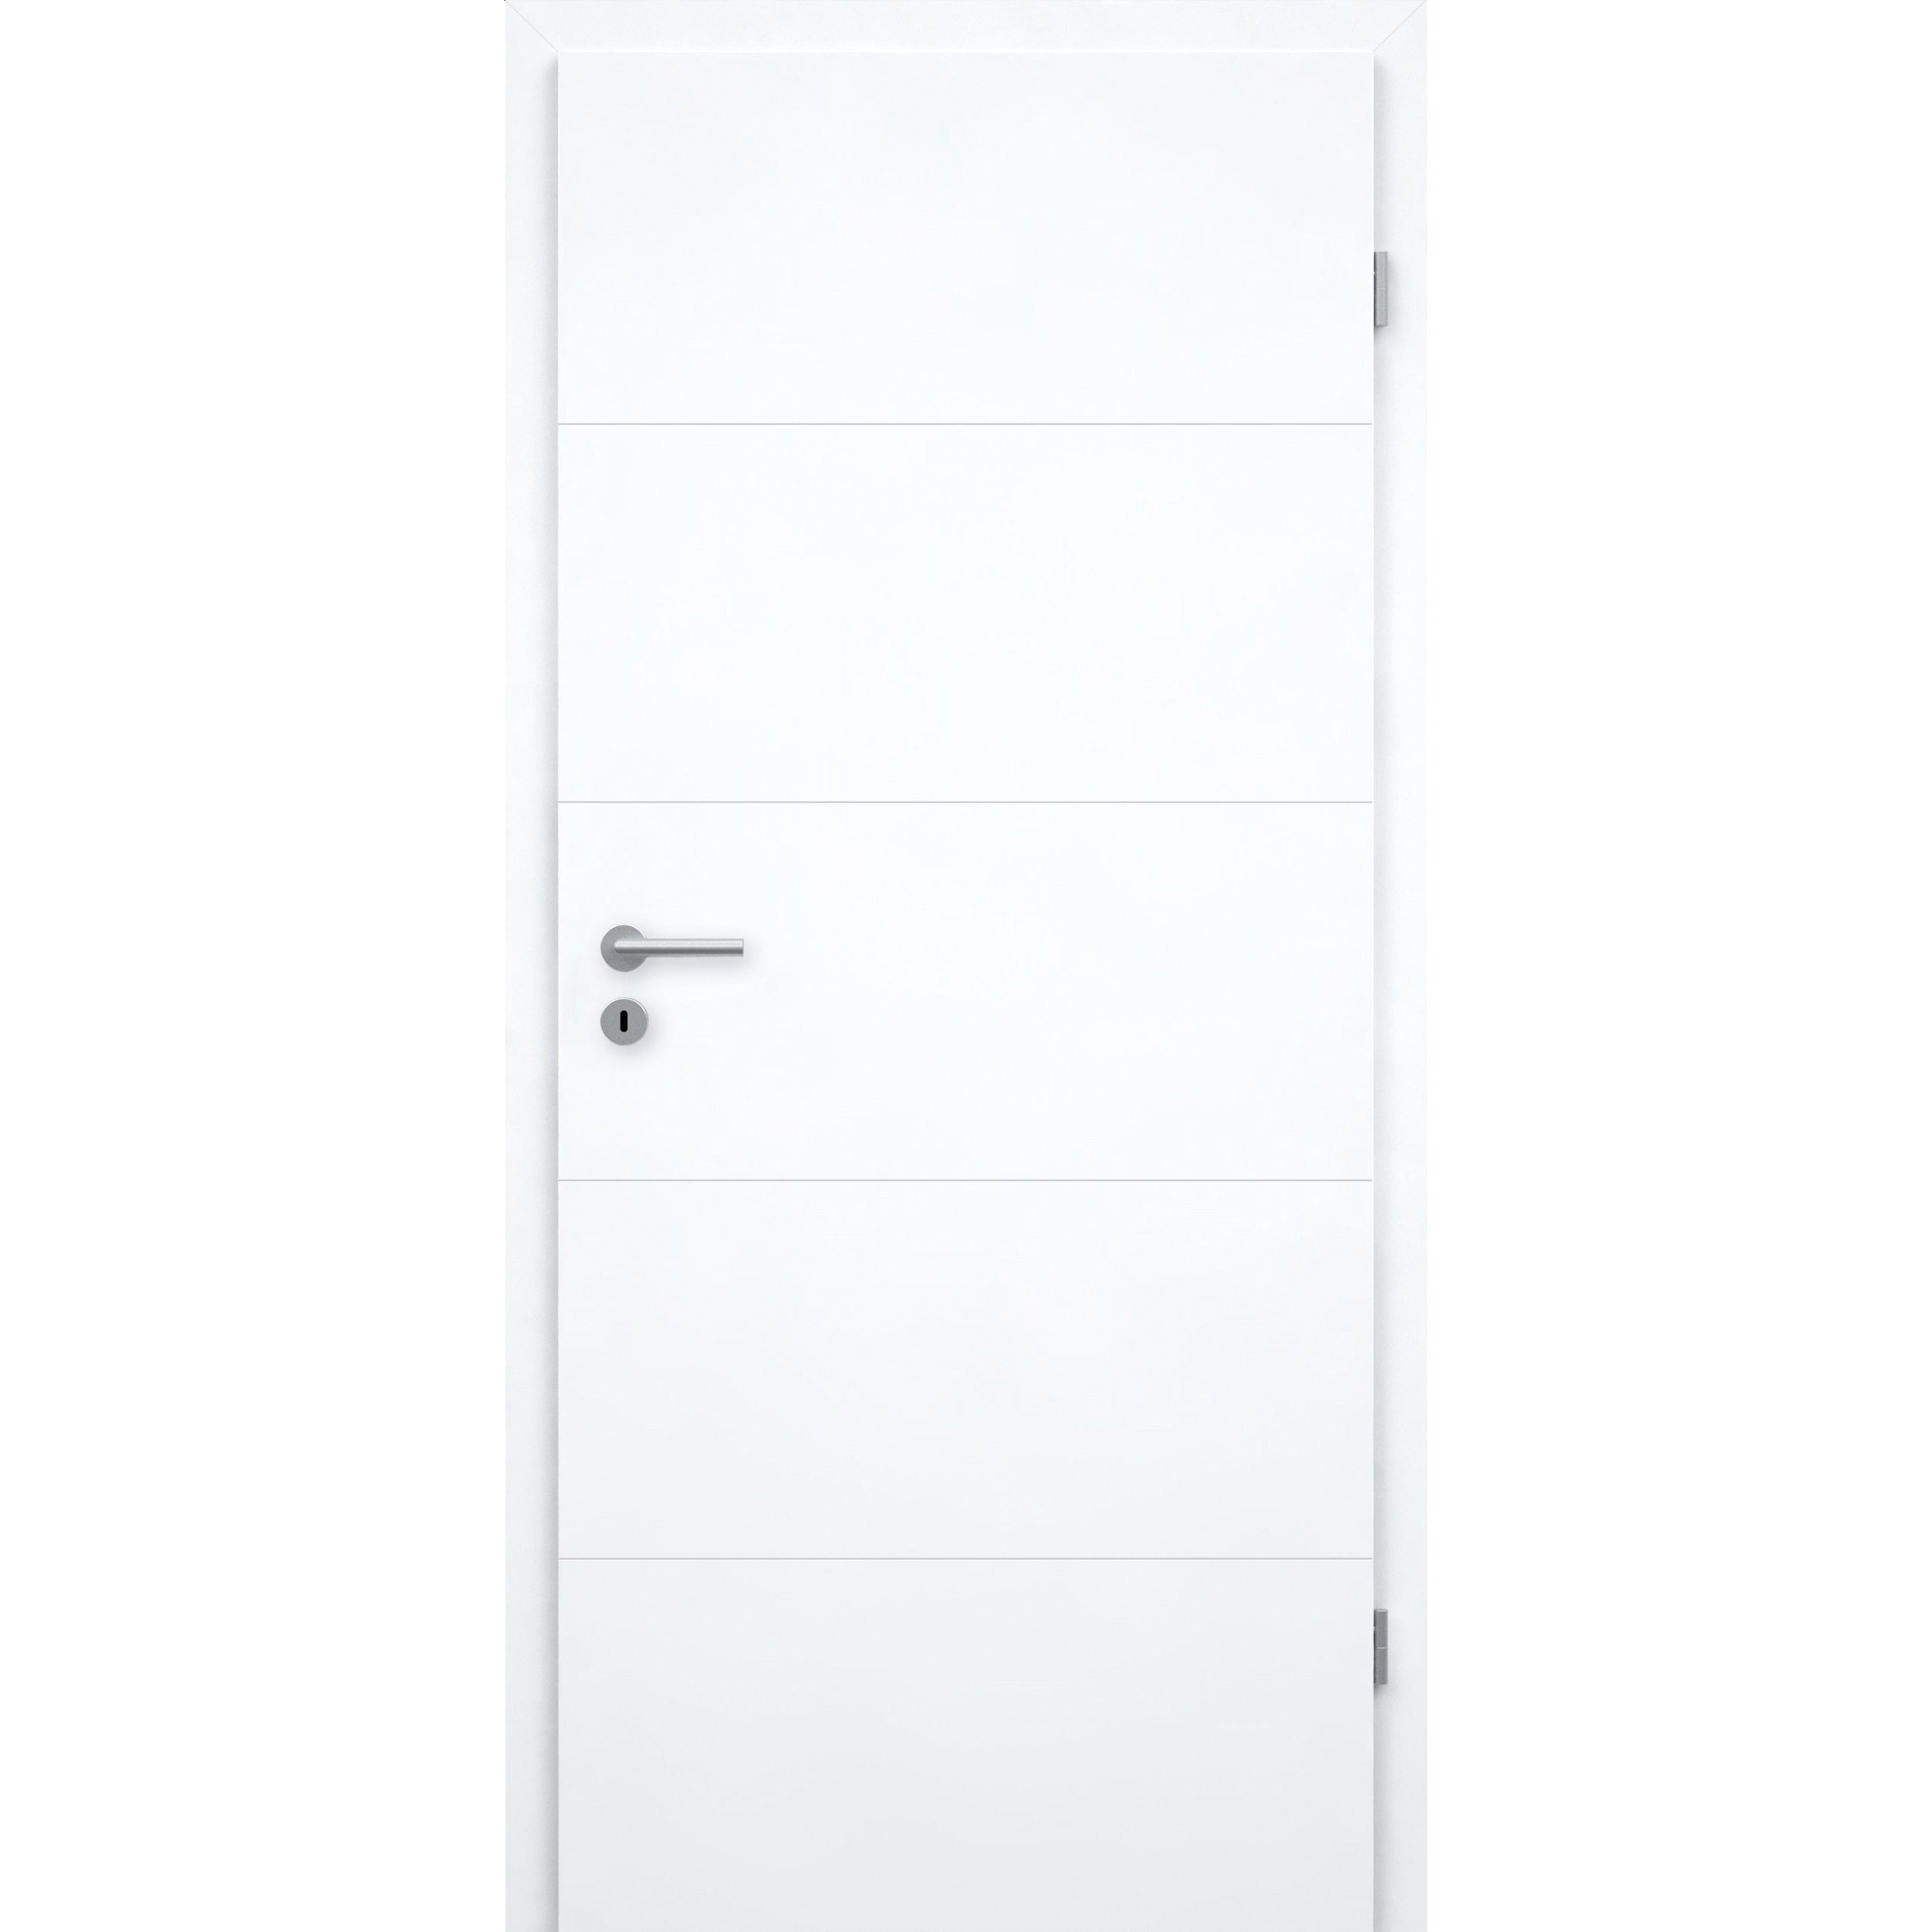 Wohnungseingangstür mit Zarge brillant-weiß 4 Rillen Designkante SK1 / KK3 - Modell Designtür Q43